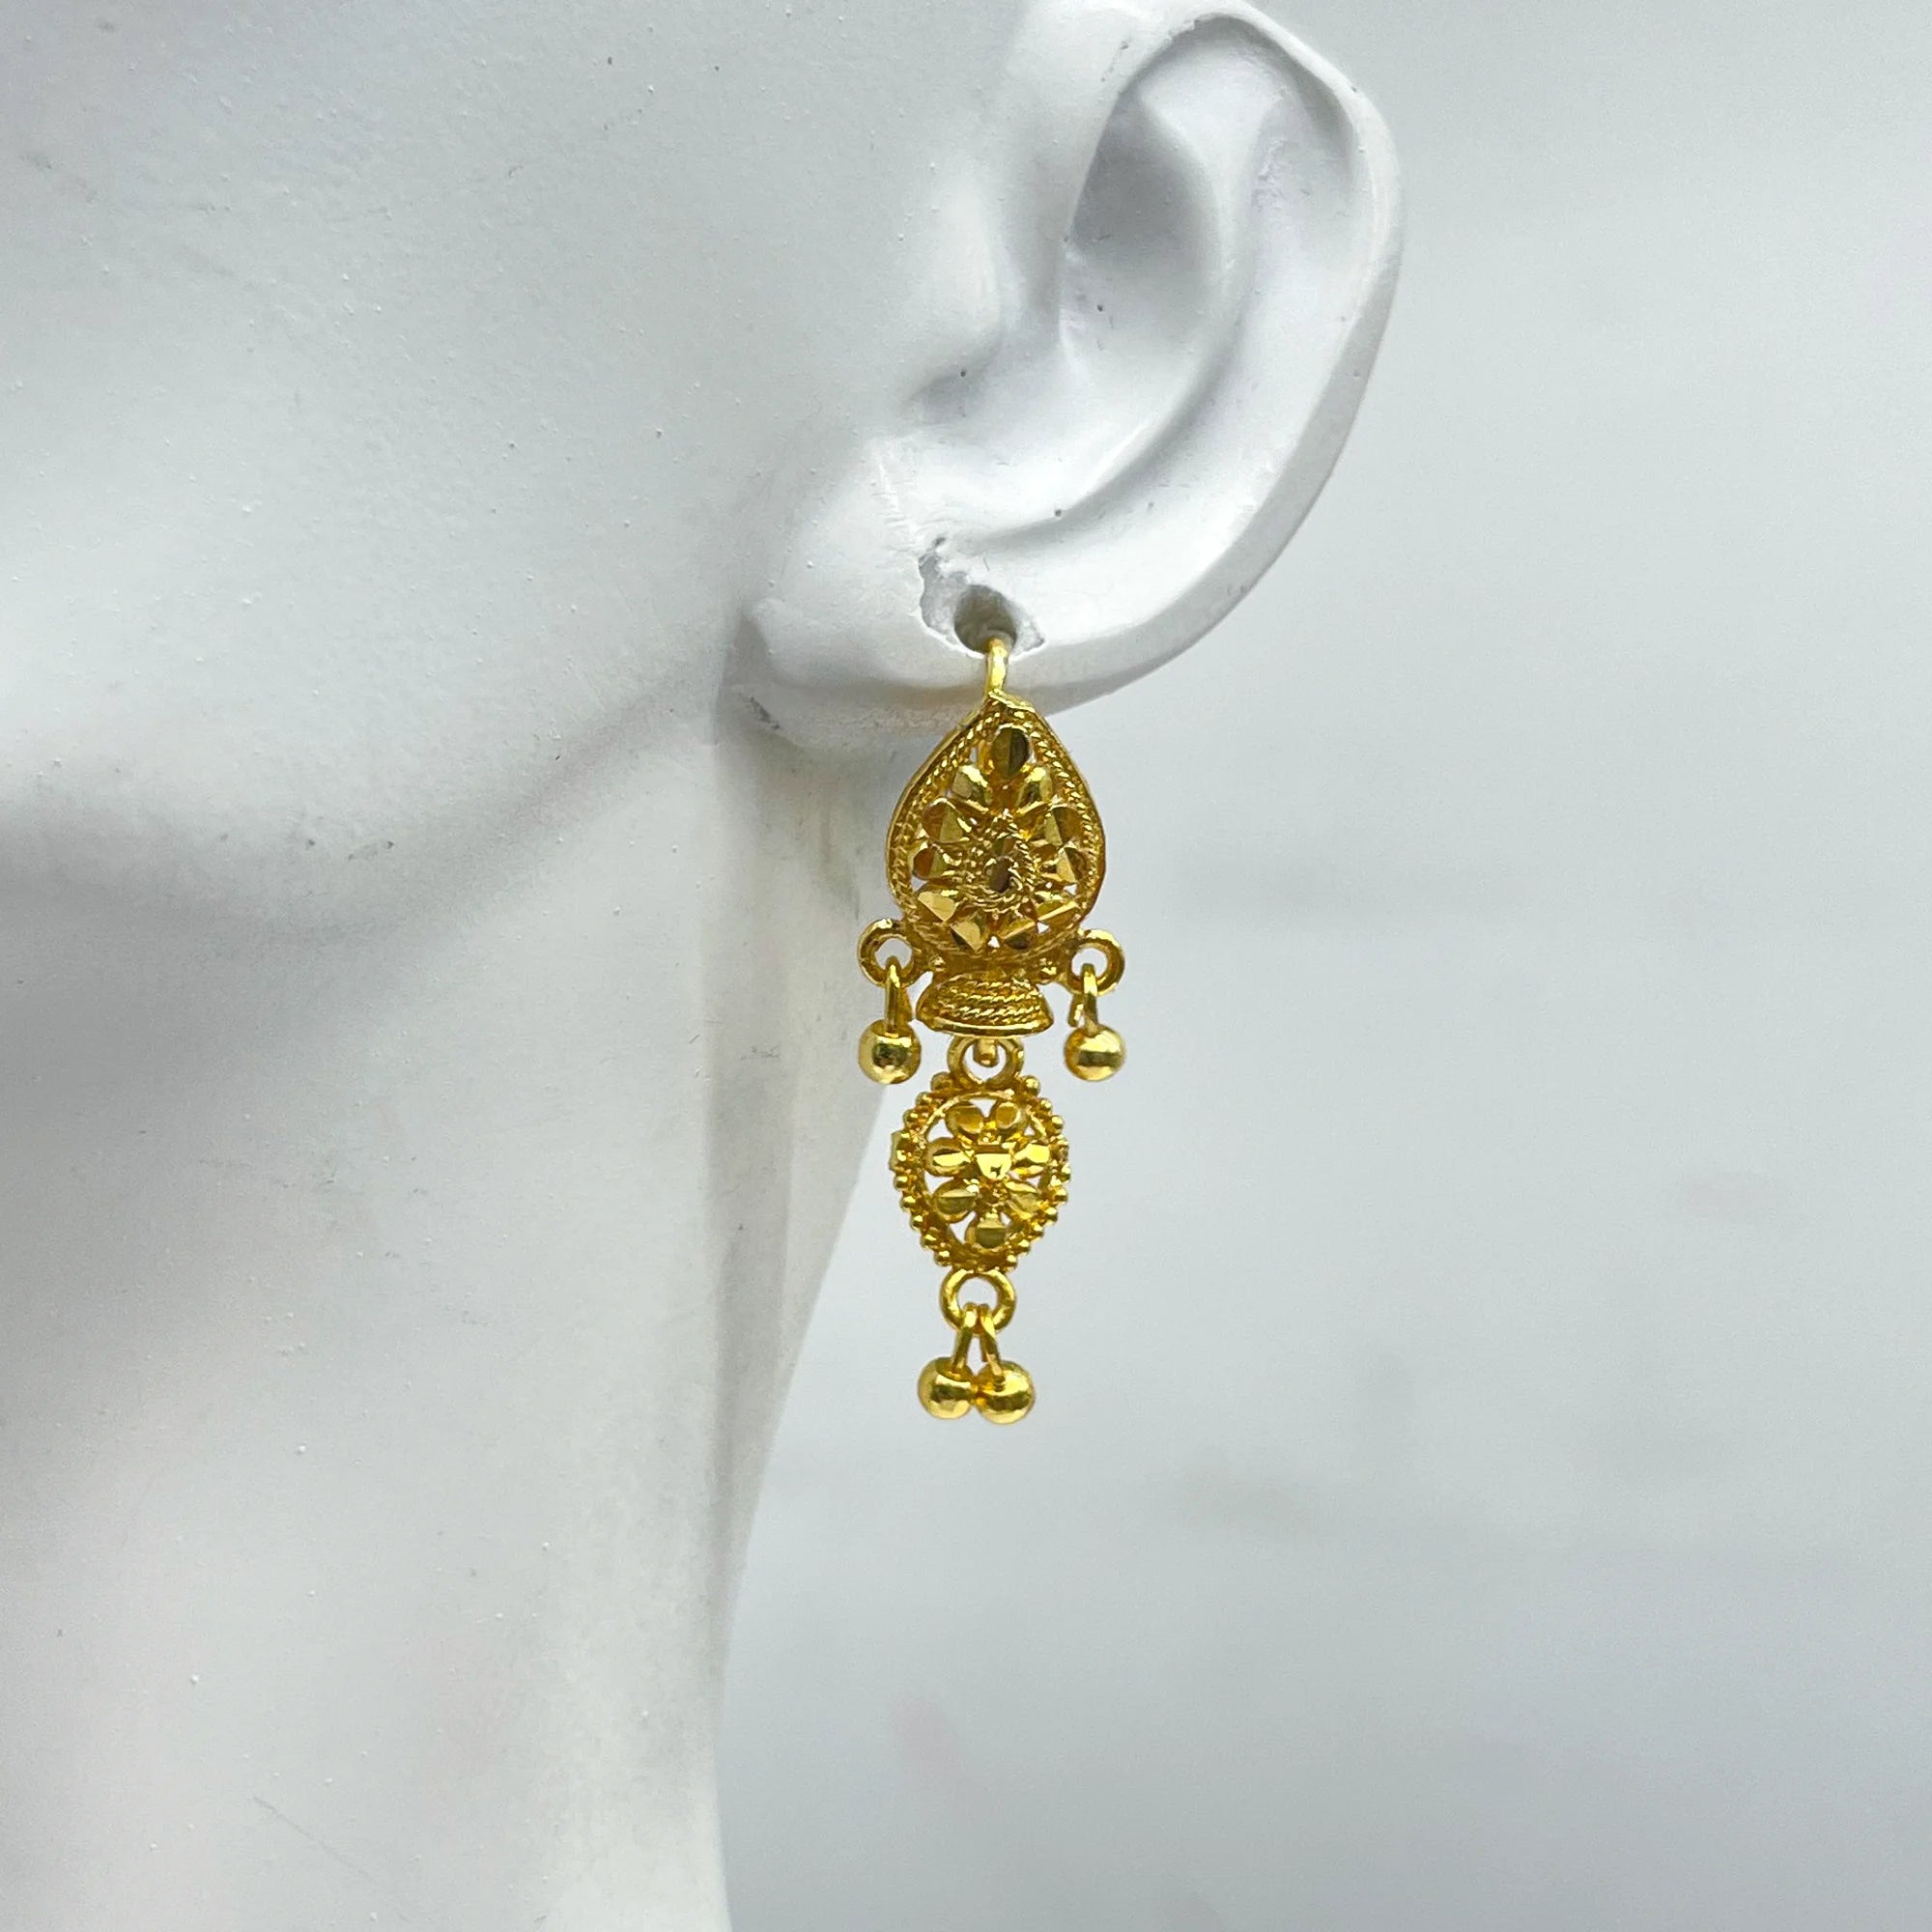 pakistani earring, girl wearing earrings, dainty earrings